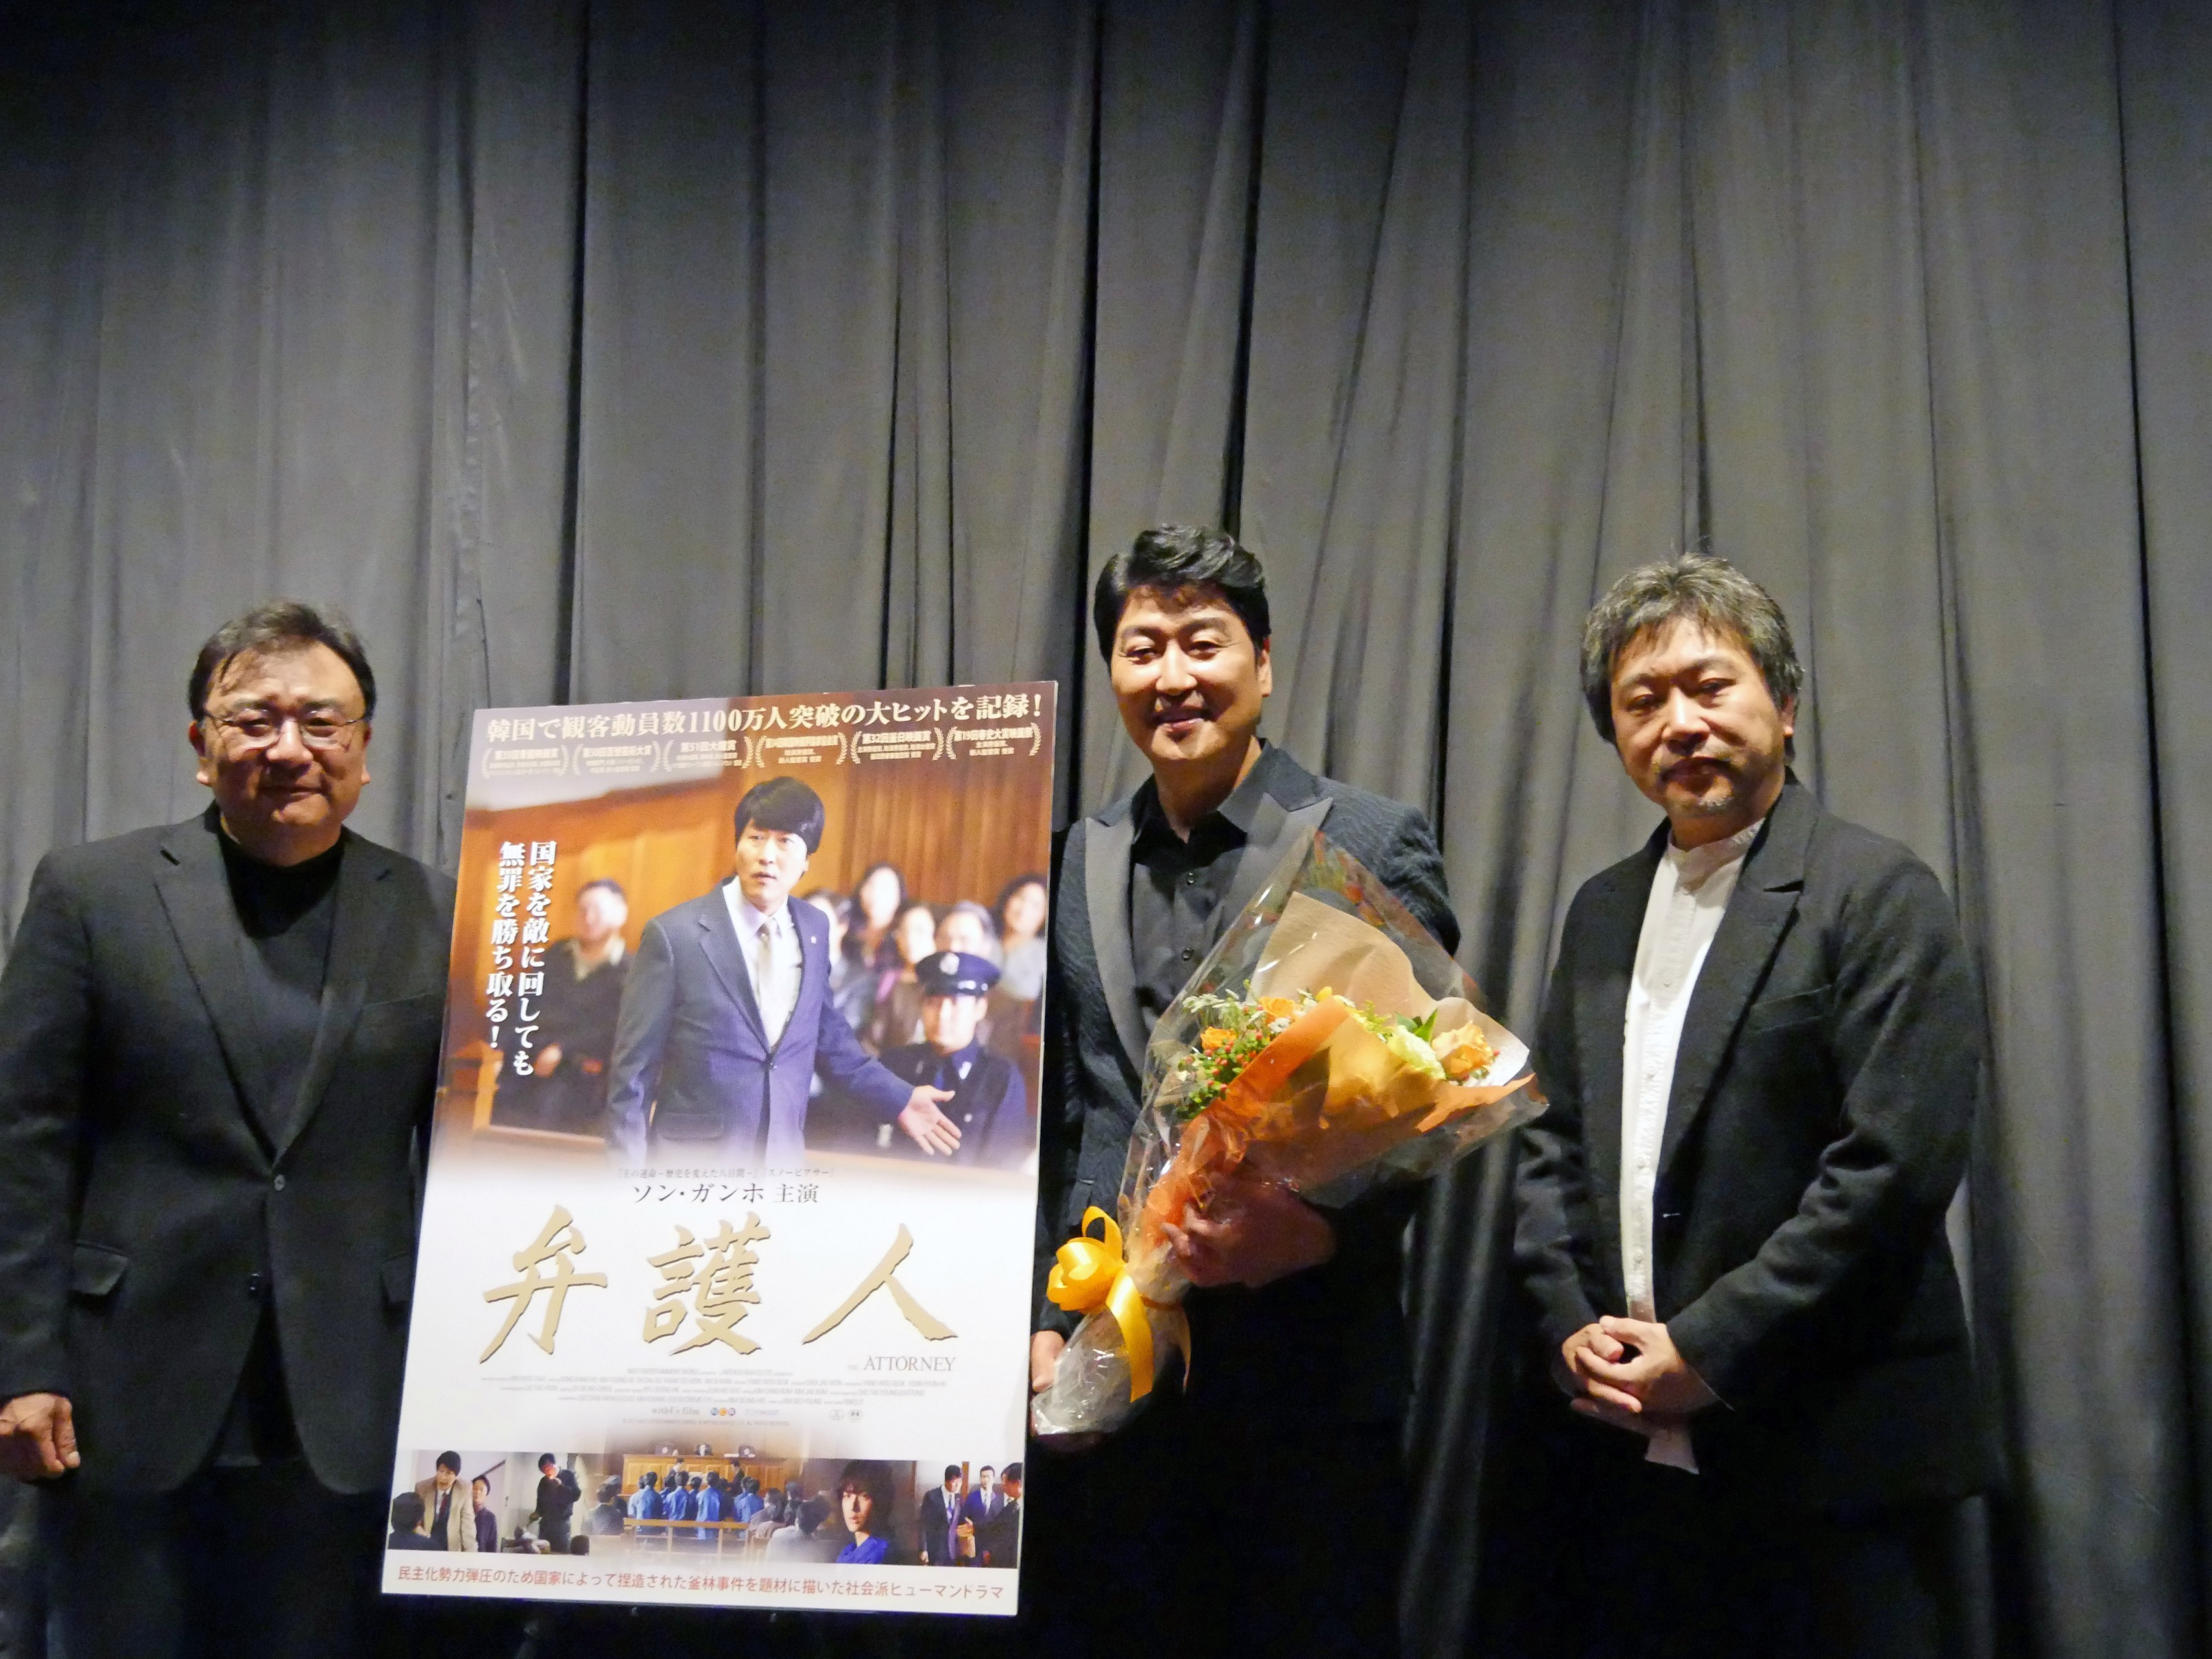 左から、チェ・ジェウォンプロデューサー、ソン・ガンホ、是枝裕和監督